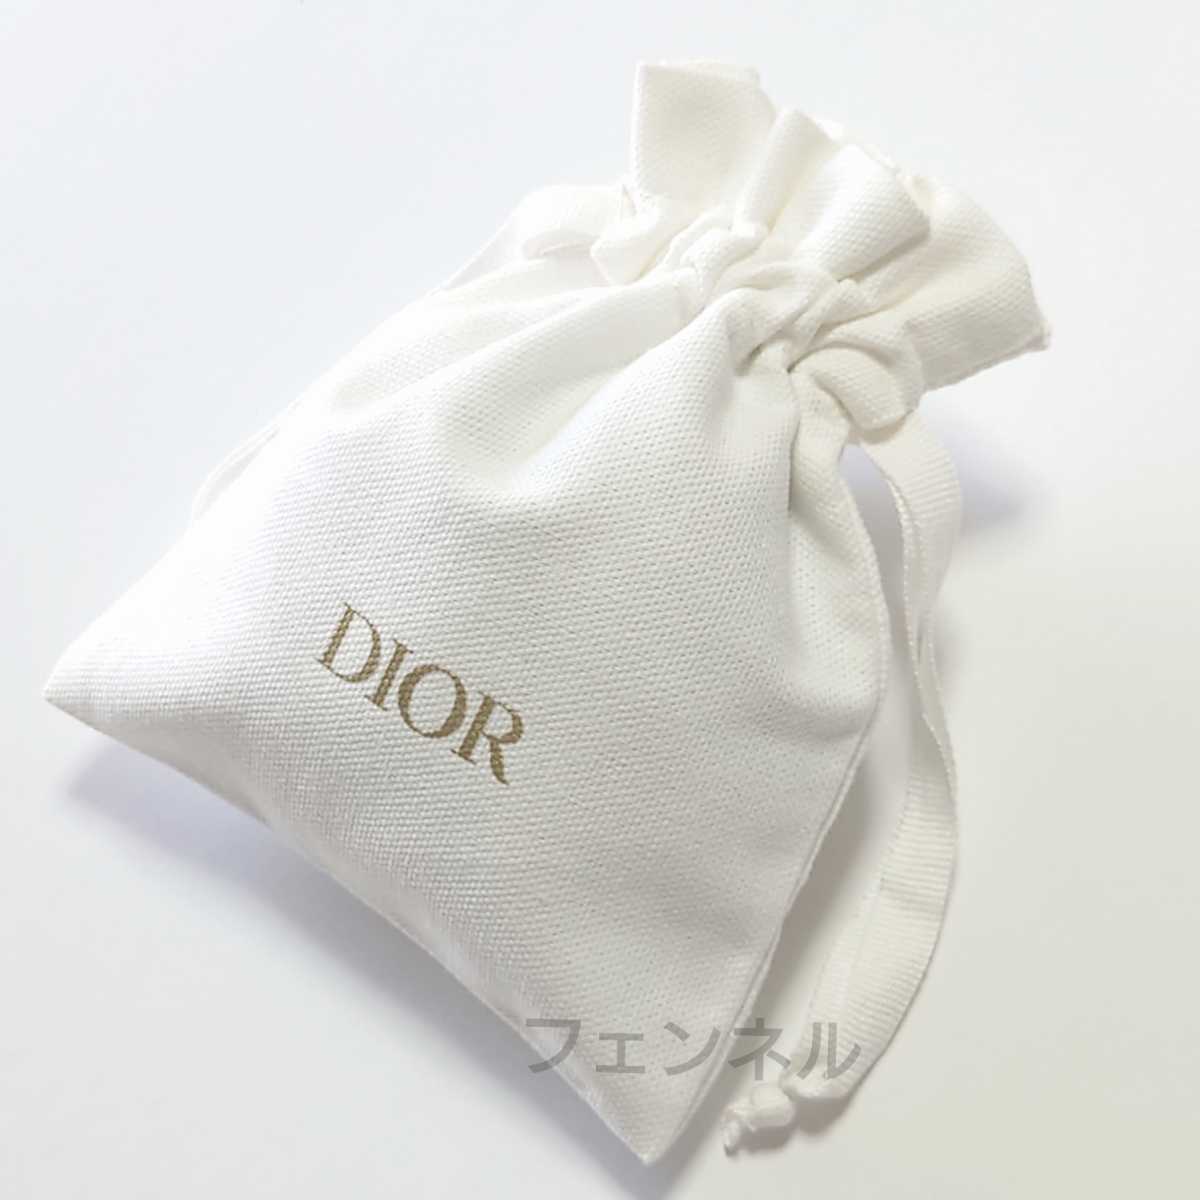  новый товар не использовался стандартный товар Christian Dior Dior Novelty белый × Gold Logo удобный Mini мешочек сумка бардачок tepakos образец 